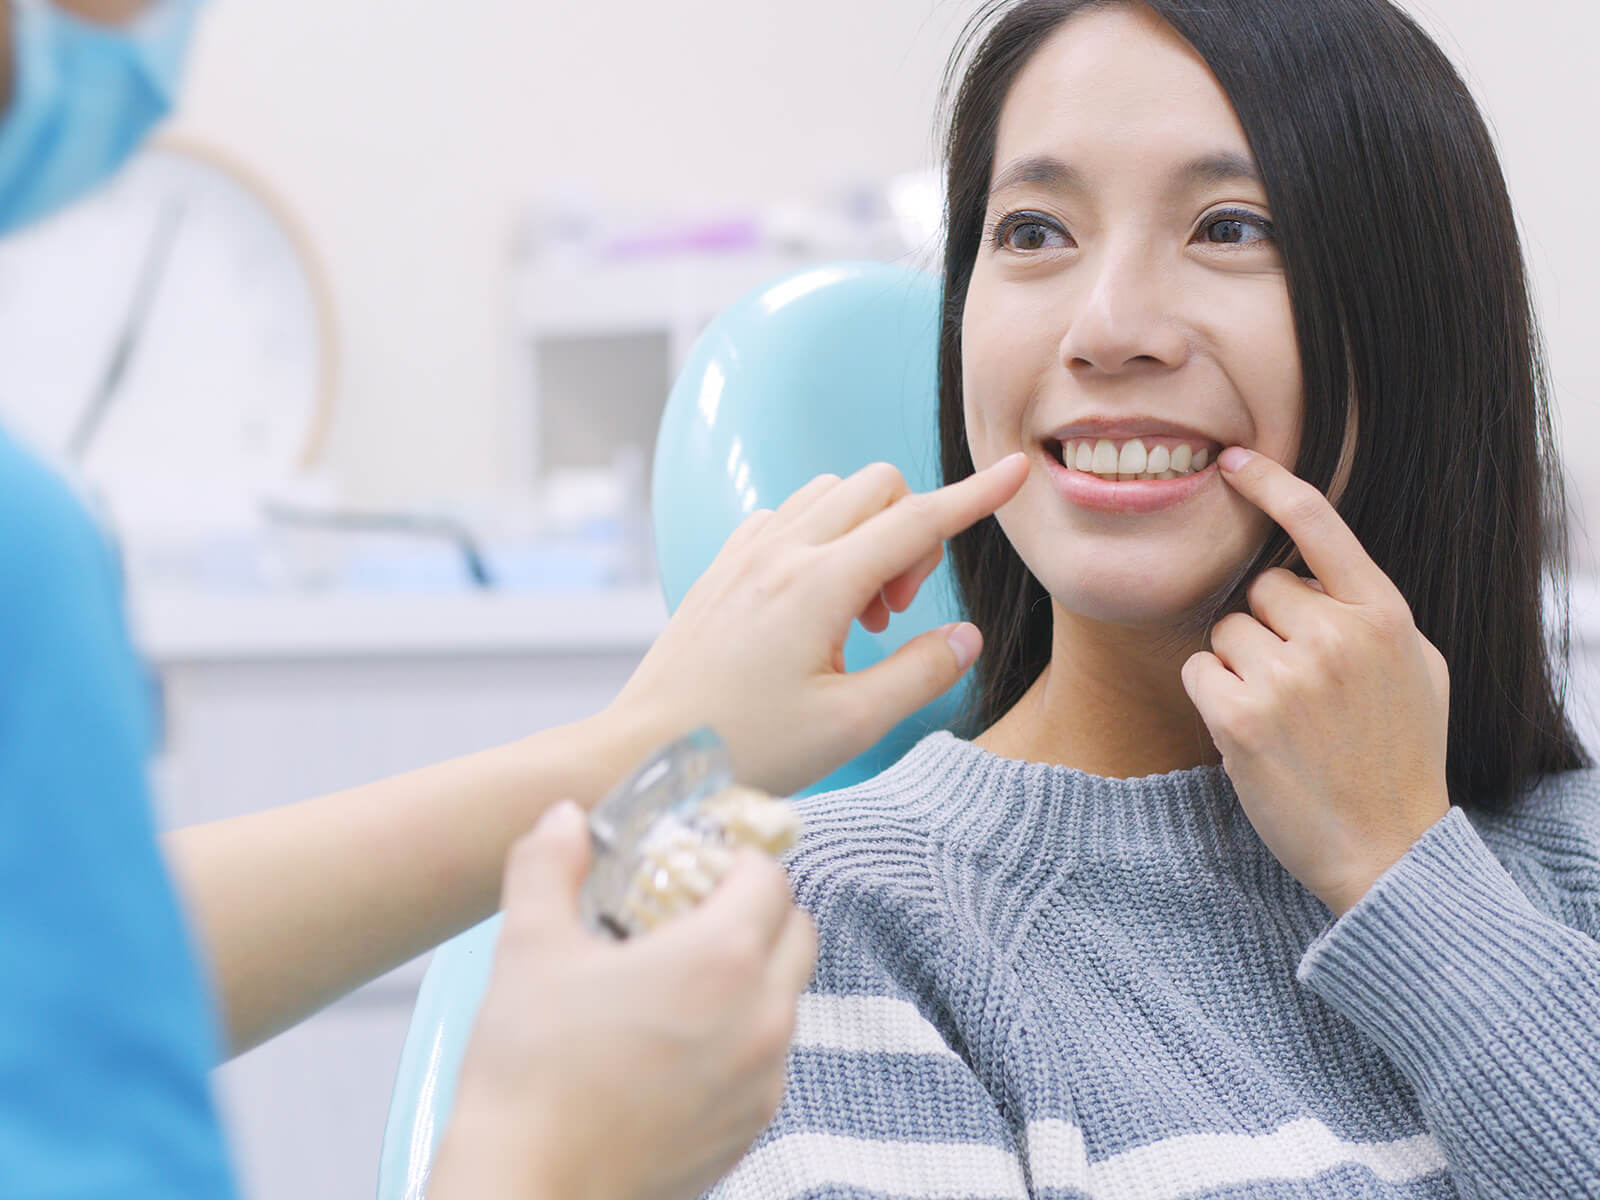 4 Reasons You May Need A Dental Crown